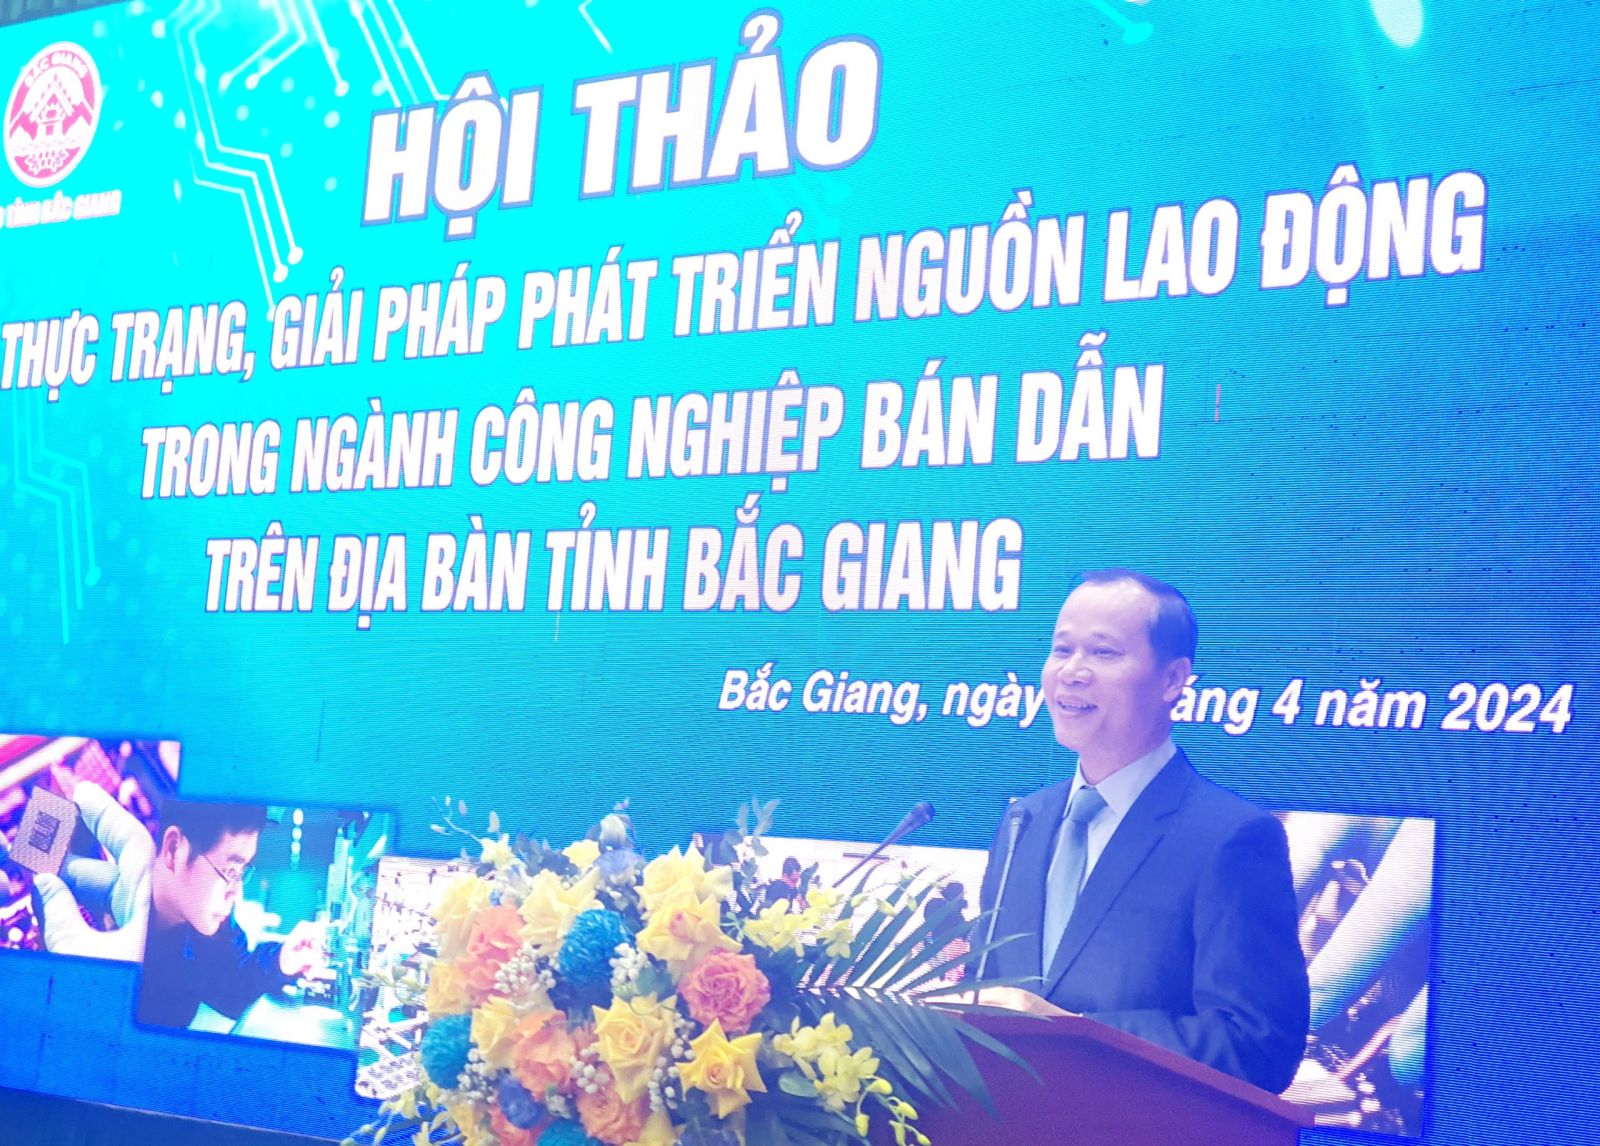 ông Mai Sơn - Phó Chủ tịch Thường trực UBND tỉnh Bắc Giang